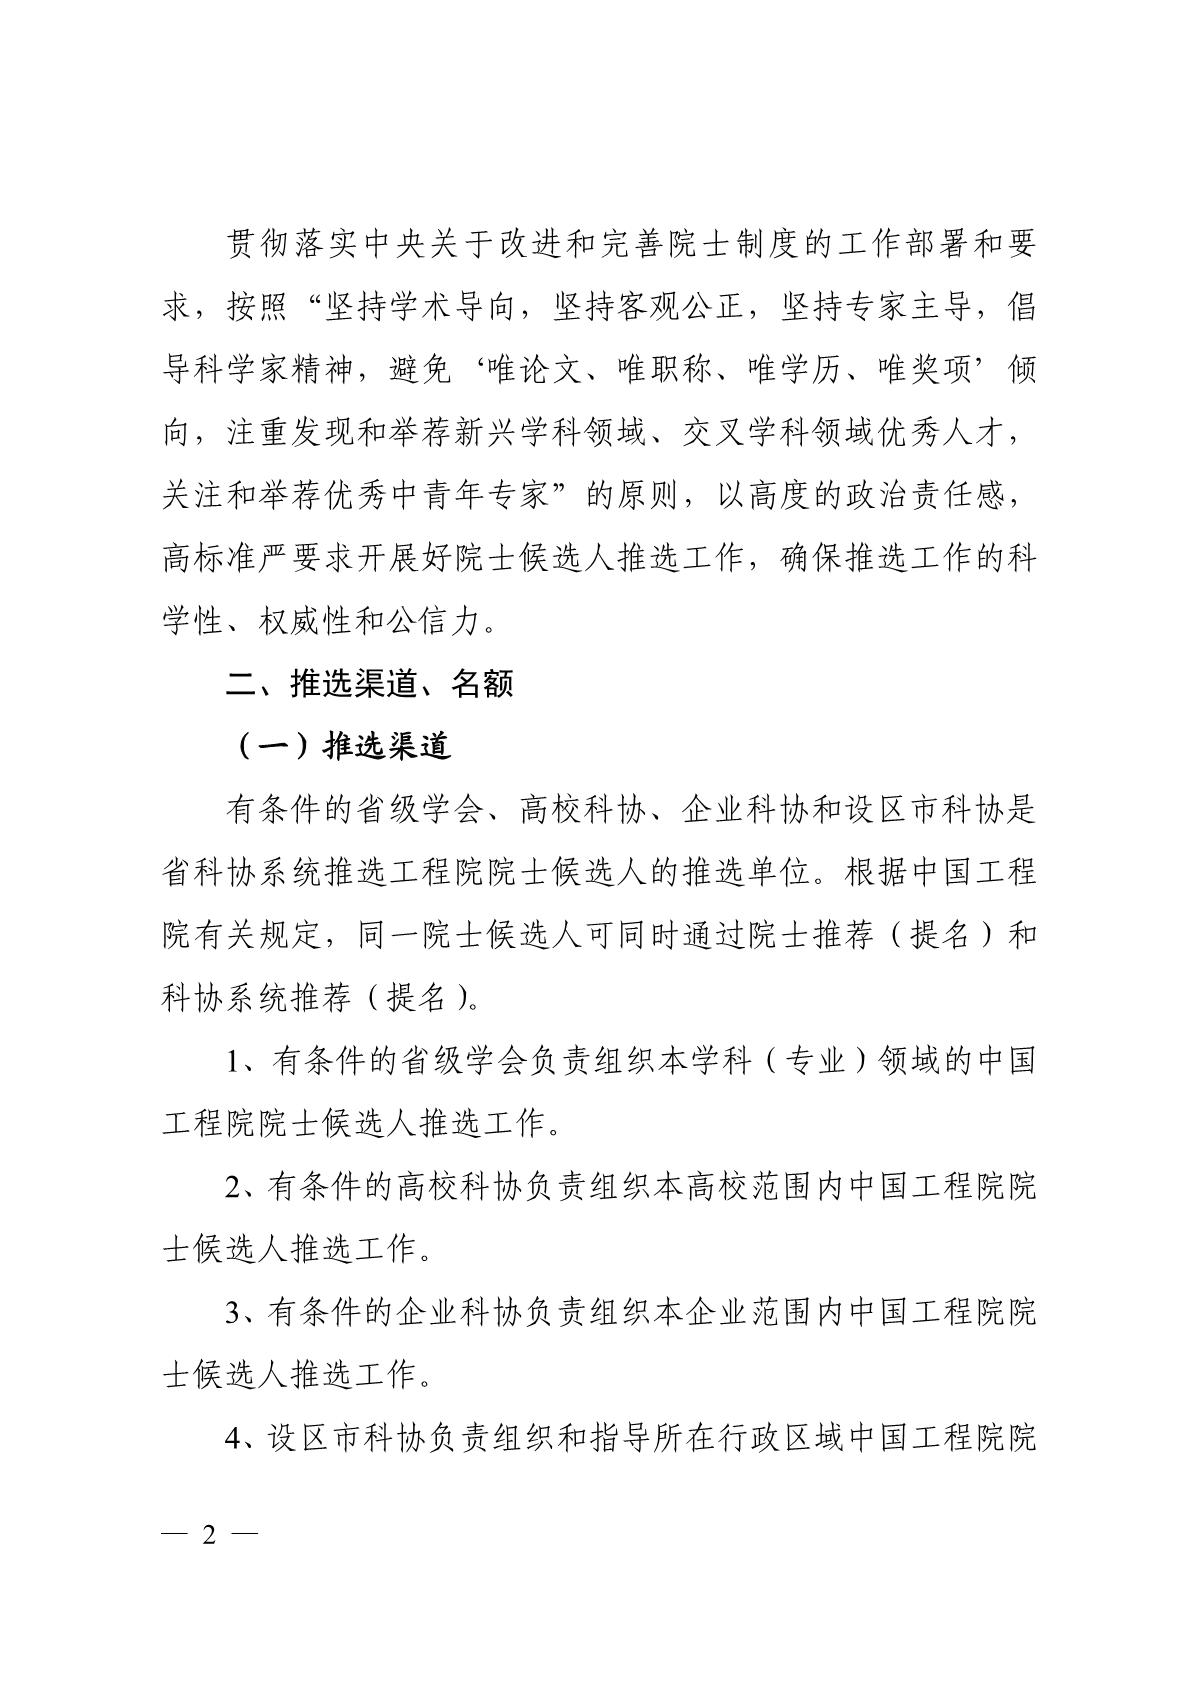 关于组织推选2021年中国工程院院士候选人的通知_2.JPG